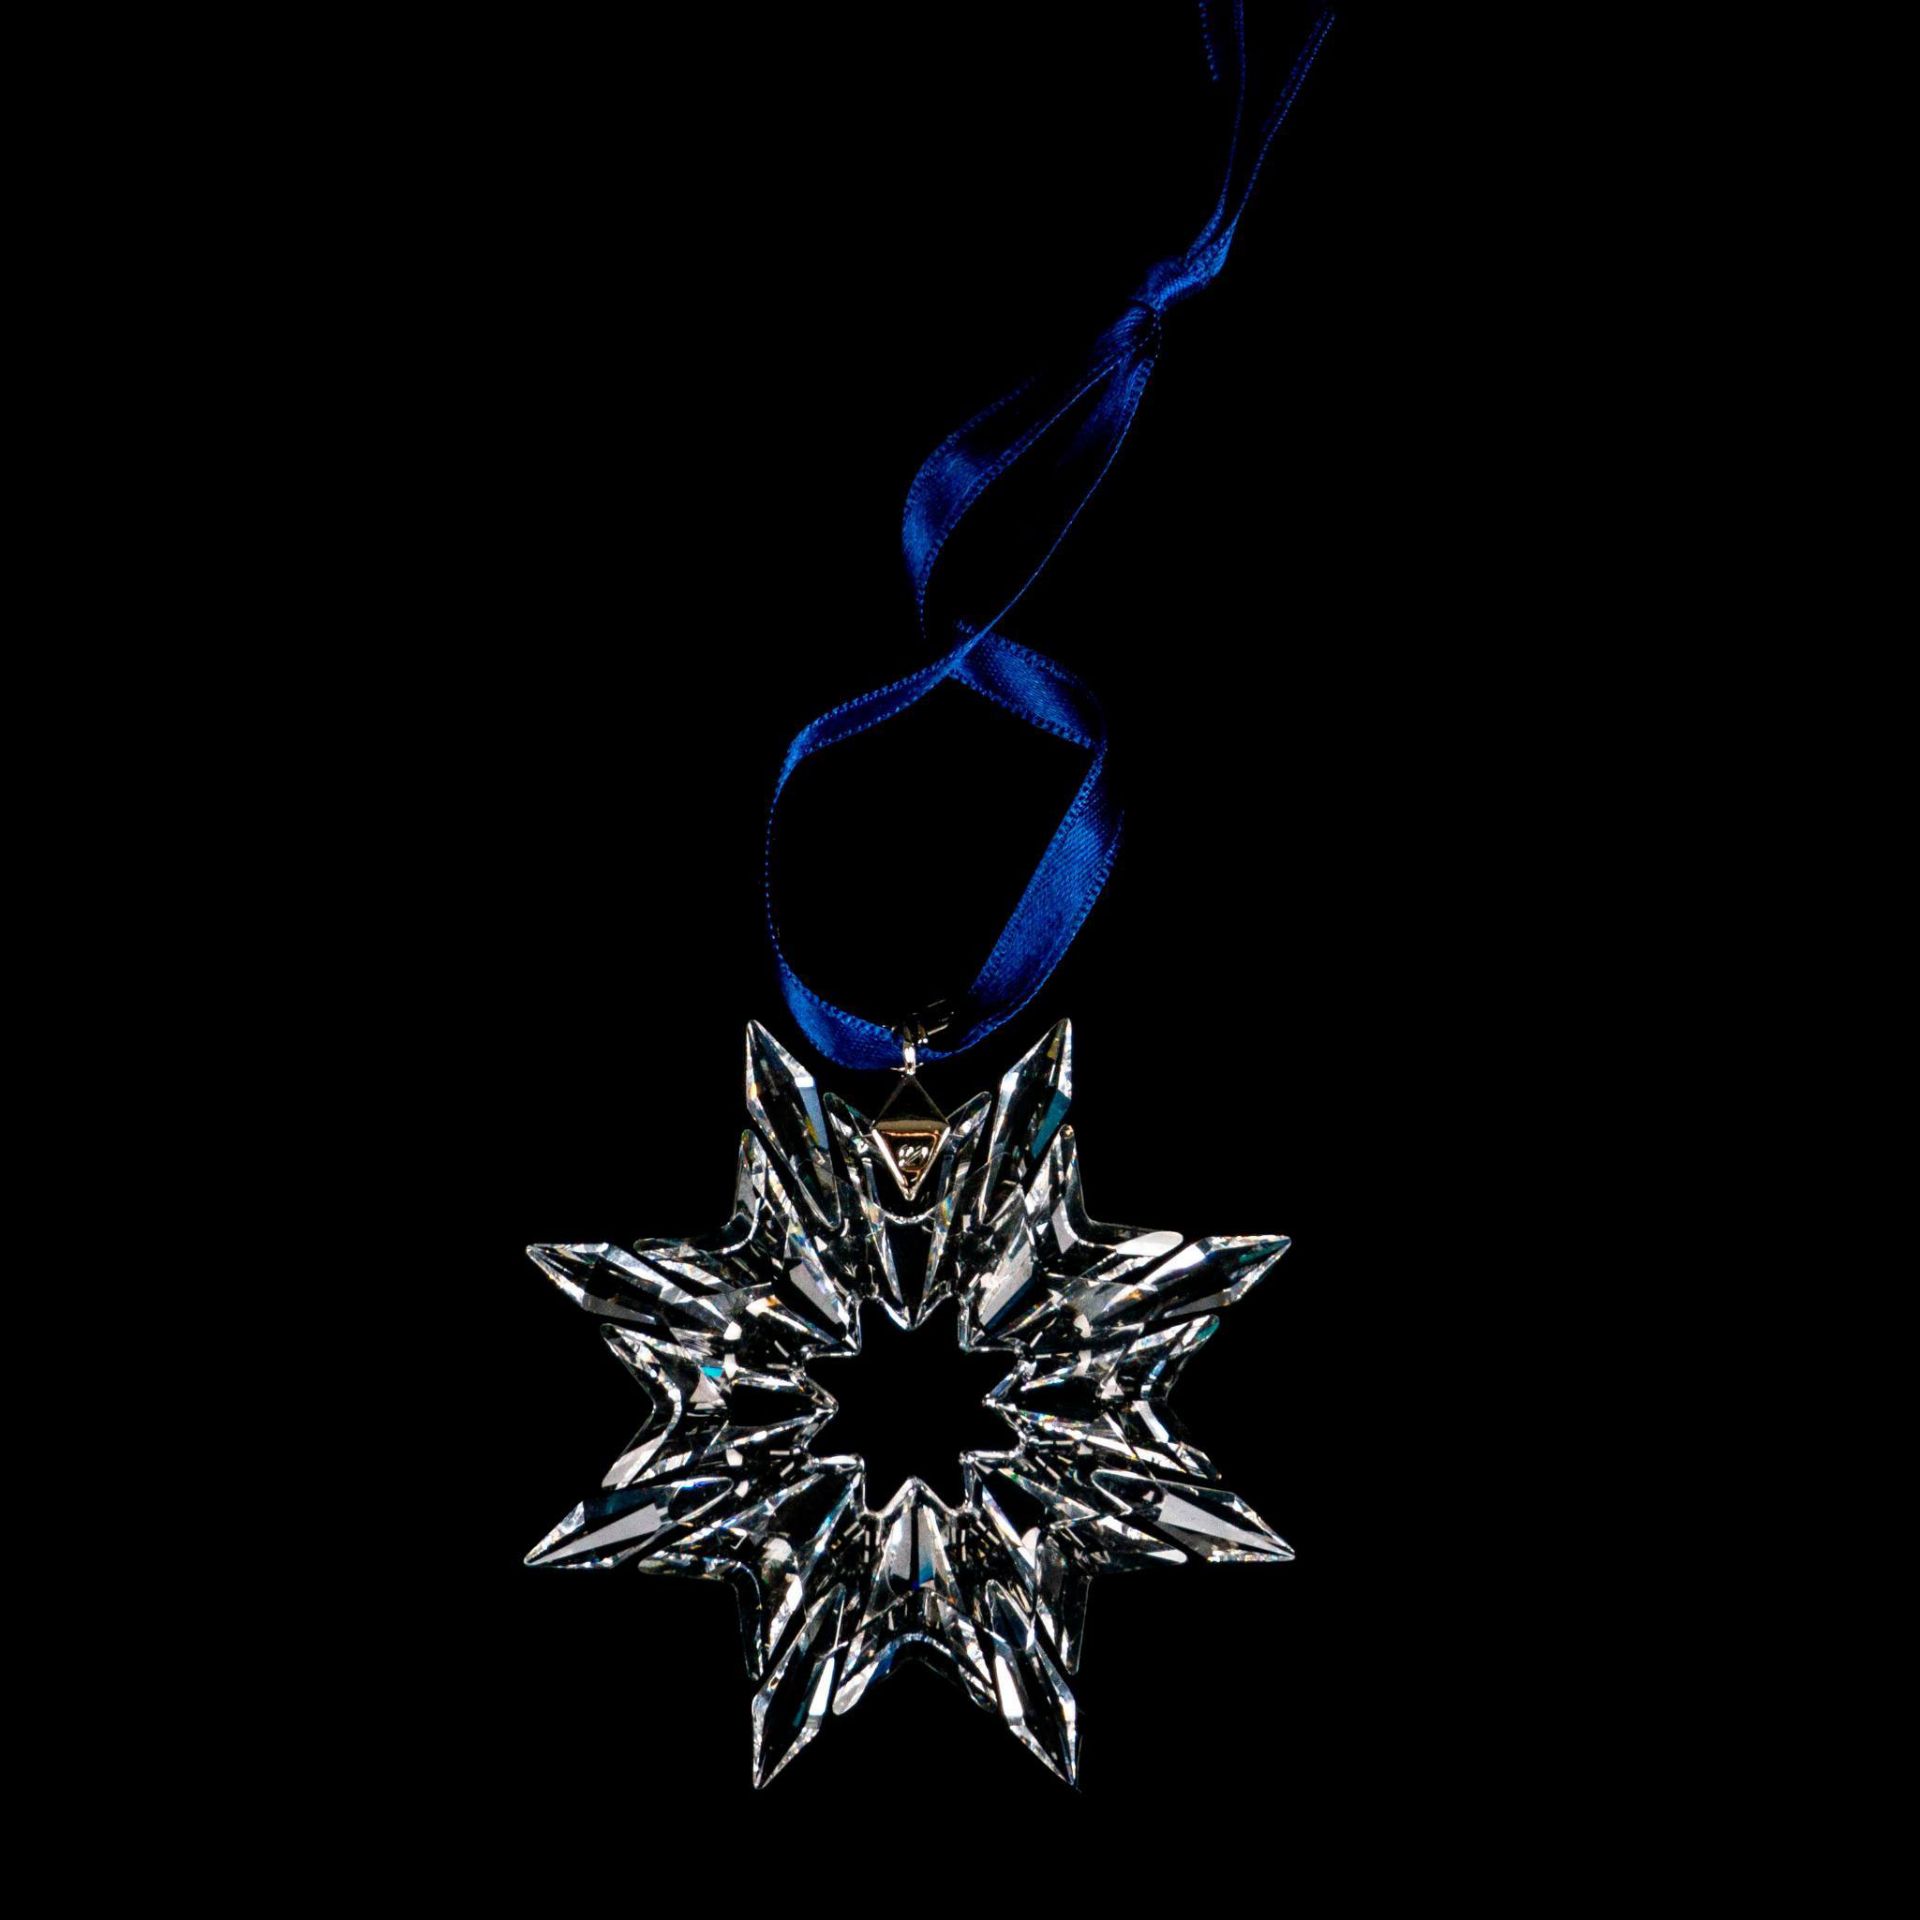 Swarovski Crystal Christmas Ornament, Snowflake 2003 - Image 2 of 3